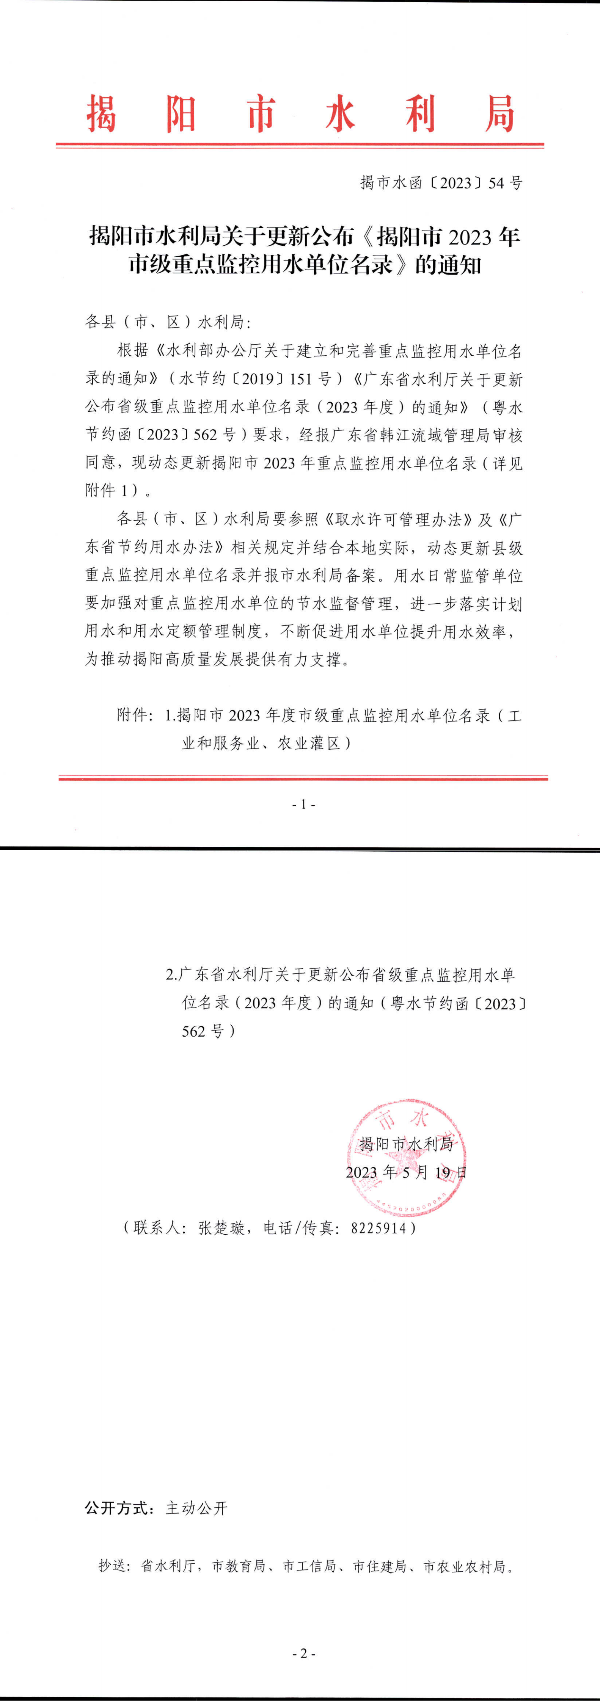 揭阳市水利局关于更新公布《揭阳市2023年市级重点监控用水单位名录》的通知_00.png